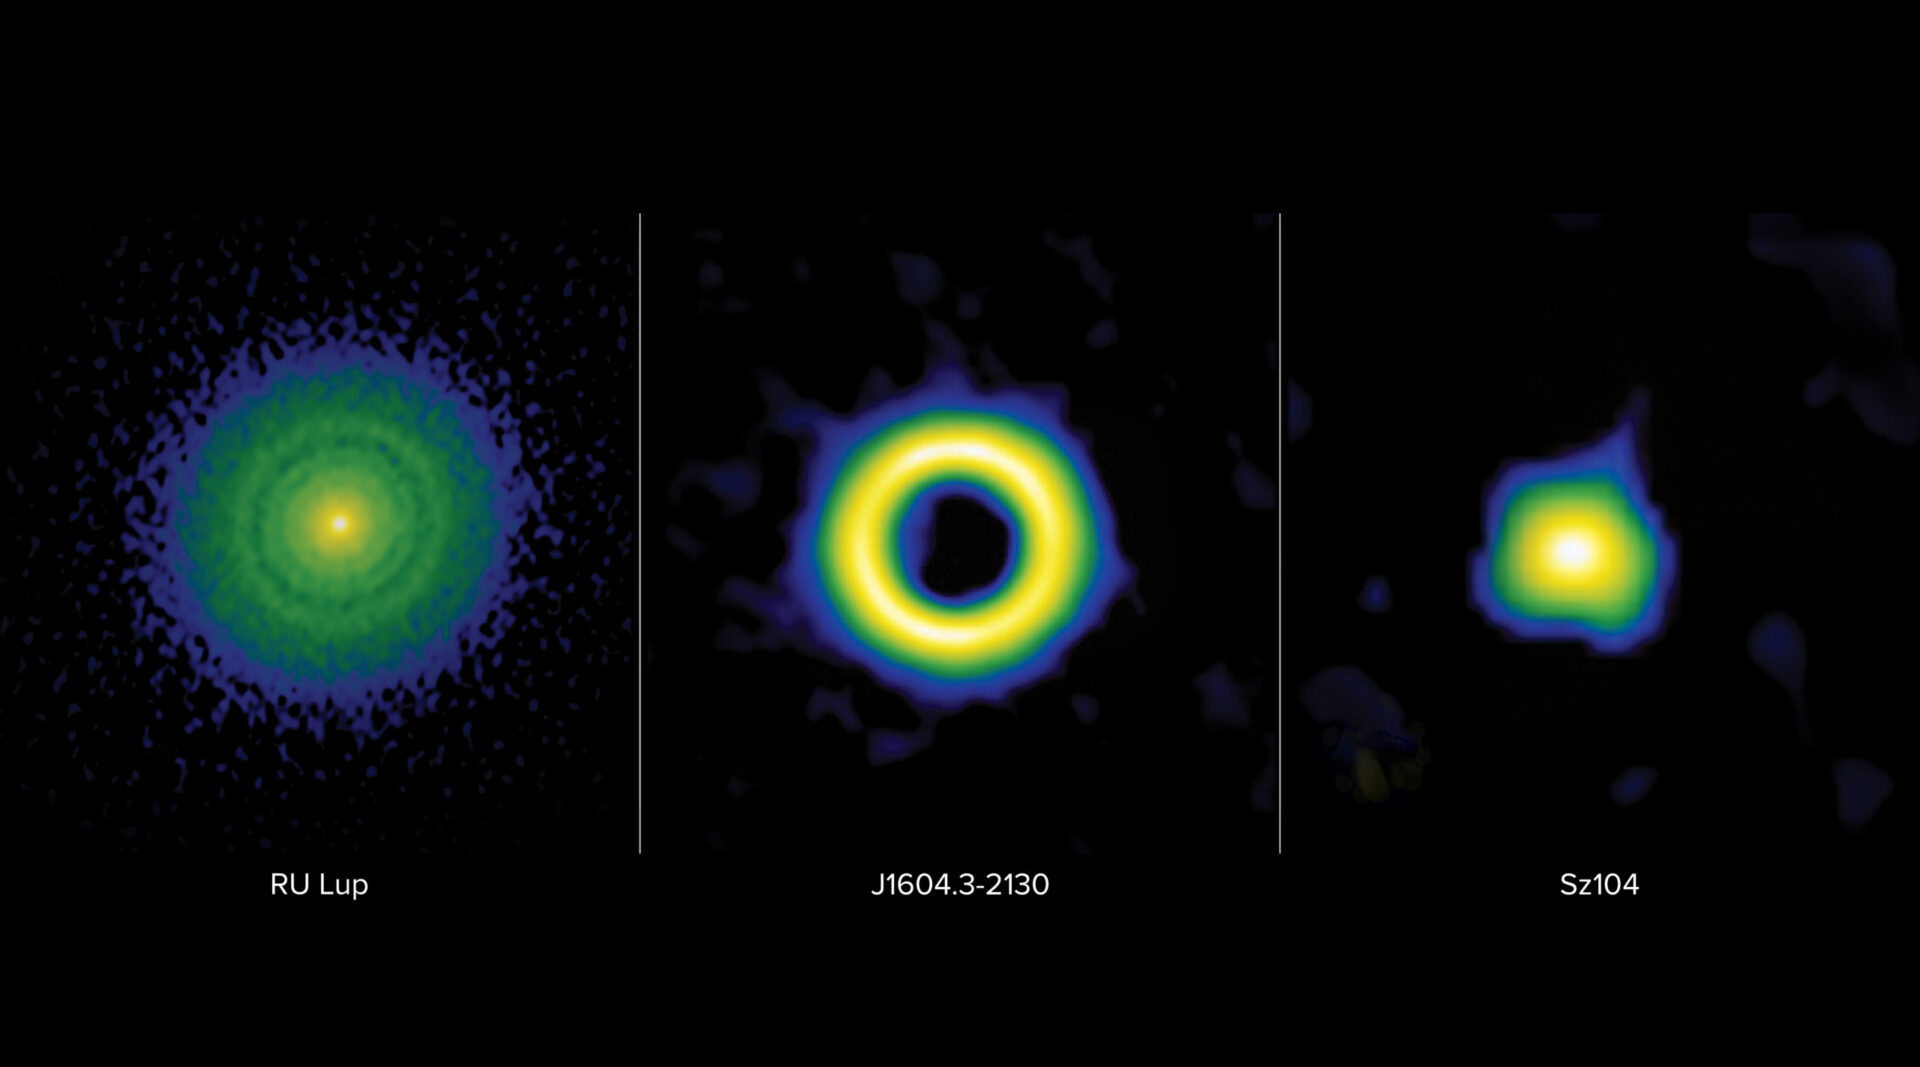 <p>Los discos protoplanetarios se clasifican en tres categorías principales: transición, anillo o extendido. Estas imágenes en falso color del Atacama Large Millimeter/submillimeter Array (ALMA) muestran estas clasificaciones en marcado contraste. A la izquierda: el disco anular de RU Lup se caracteriza por espacios estrechos que se cree que están tallados por planetas gigantes con masas que oscilan entre una masa de Neptuno y una masa de Júpiter. Al medio: el disco de transición de J1604.3-2130 se caracteriza por una gran cavidad interior que se cree que está tallada por planetas más masivos que Júpiter, también conocidos como planetas super-jovianos. A la derecha: se cree que el disco compacto de Sz104 no contiene planetas gigantes, ya que carece de los reveladores surcos y cavidades asociados con la presencia de planetas gigantes. Crédito: ALMA (ESO/NAOJ/NRAO), S. Dagnello (NRAO)</p>
